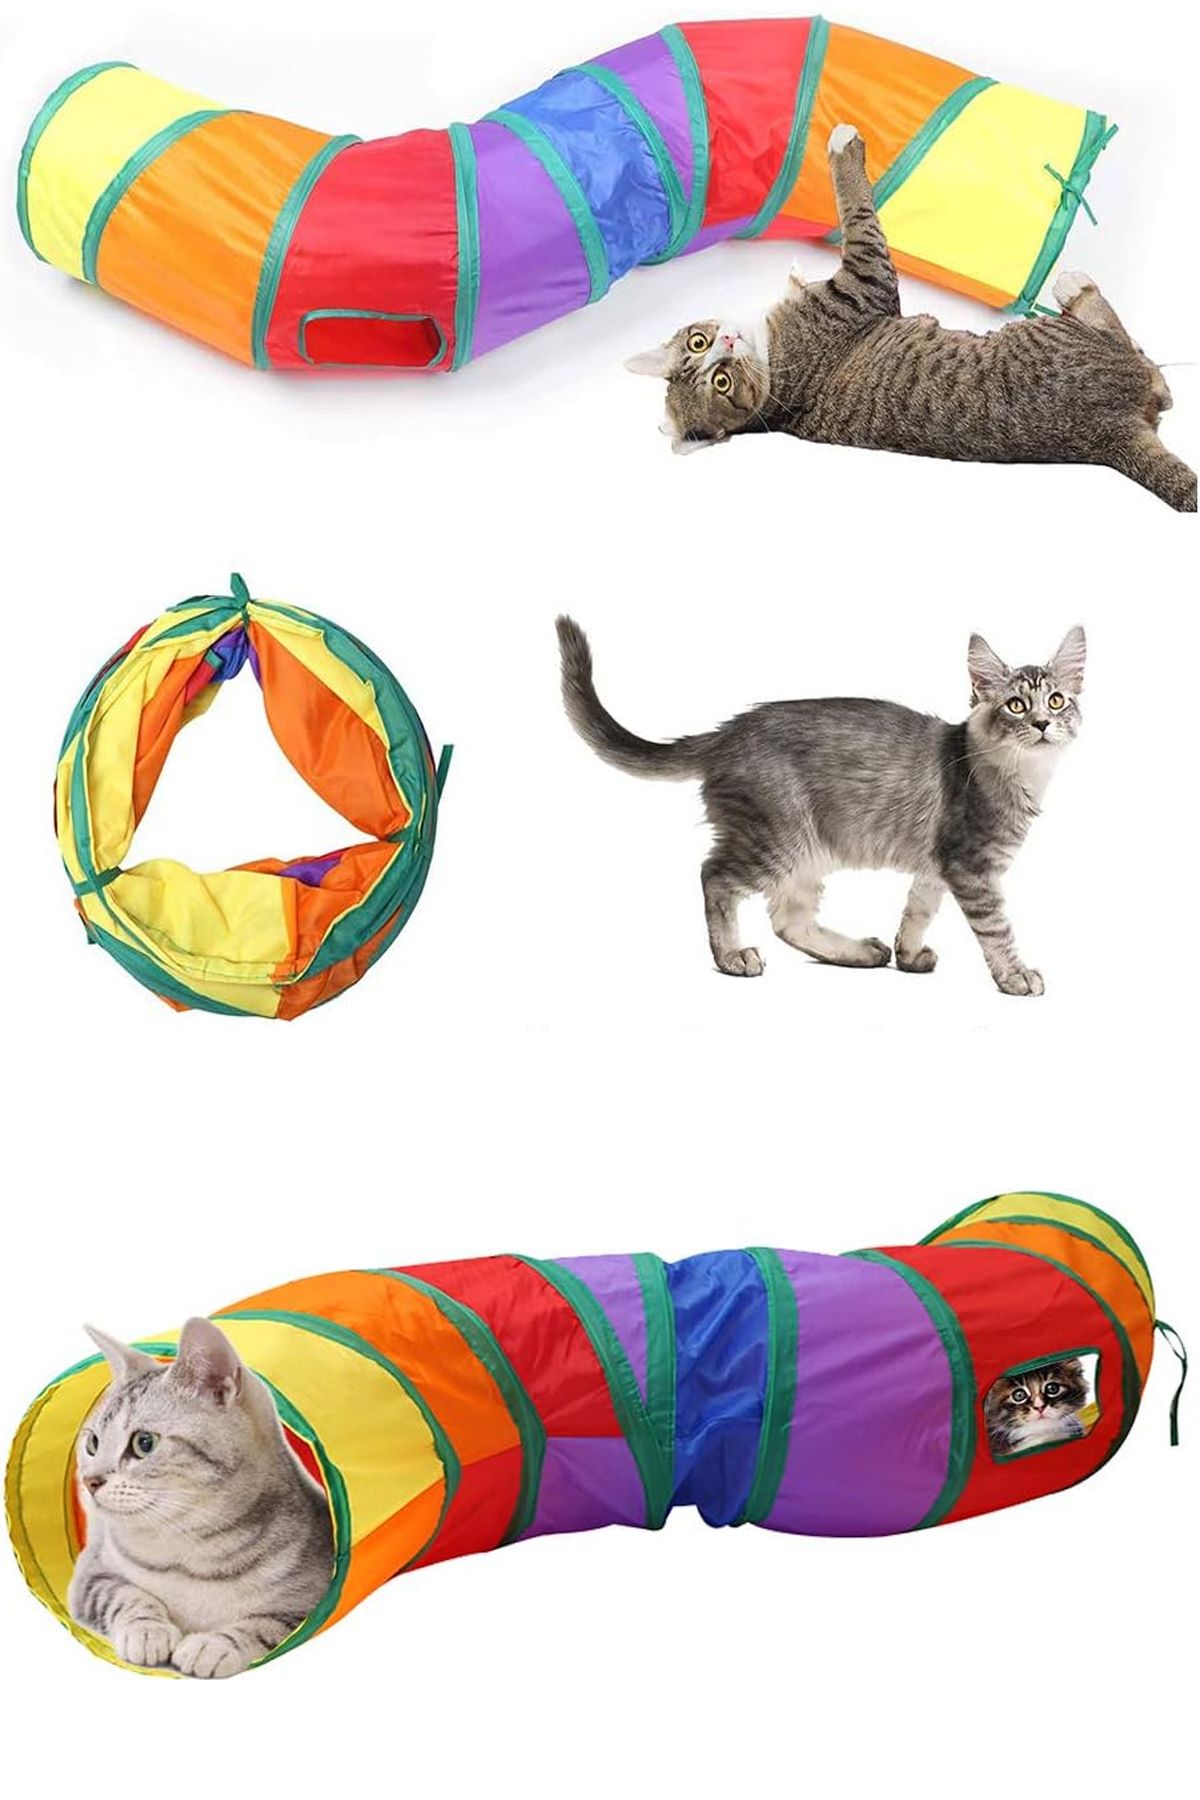 Dream Plus Katlanabilir Taşınabilir Portatif Kedi Oyun Tüneli Evcil Hayvan Aktivite Oyuncağı Oyun Alanı